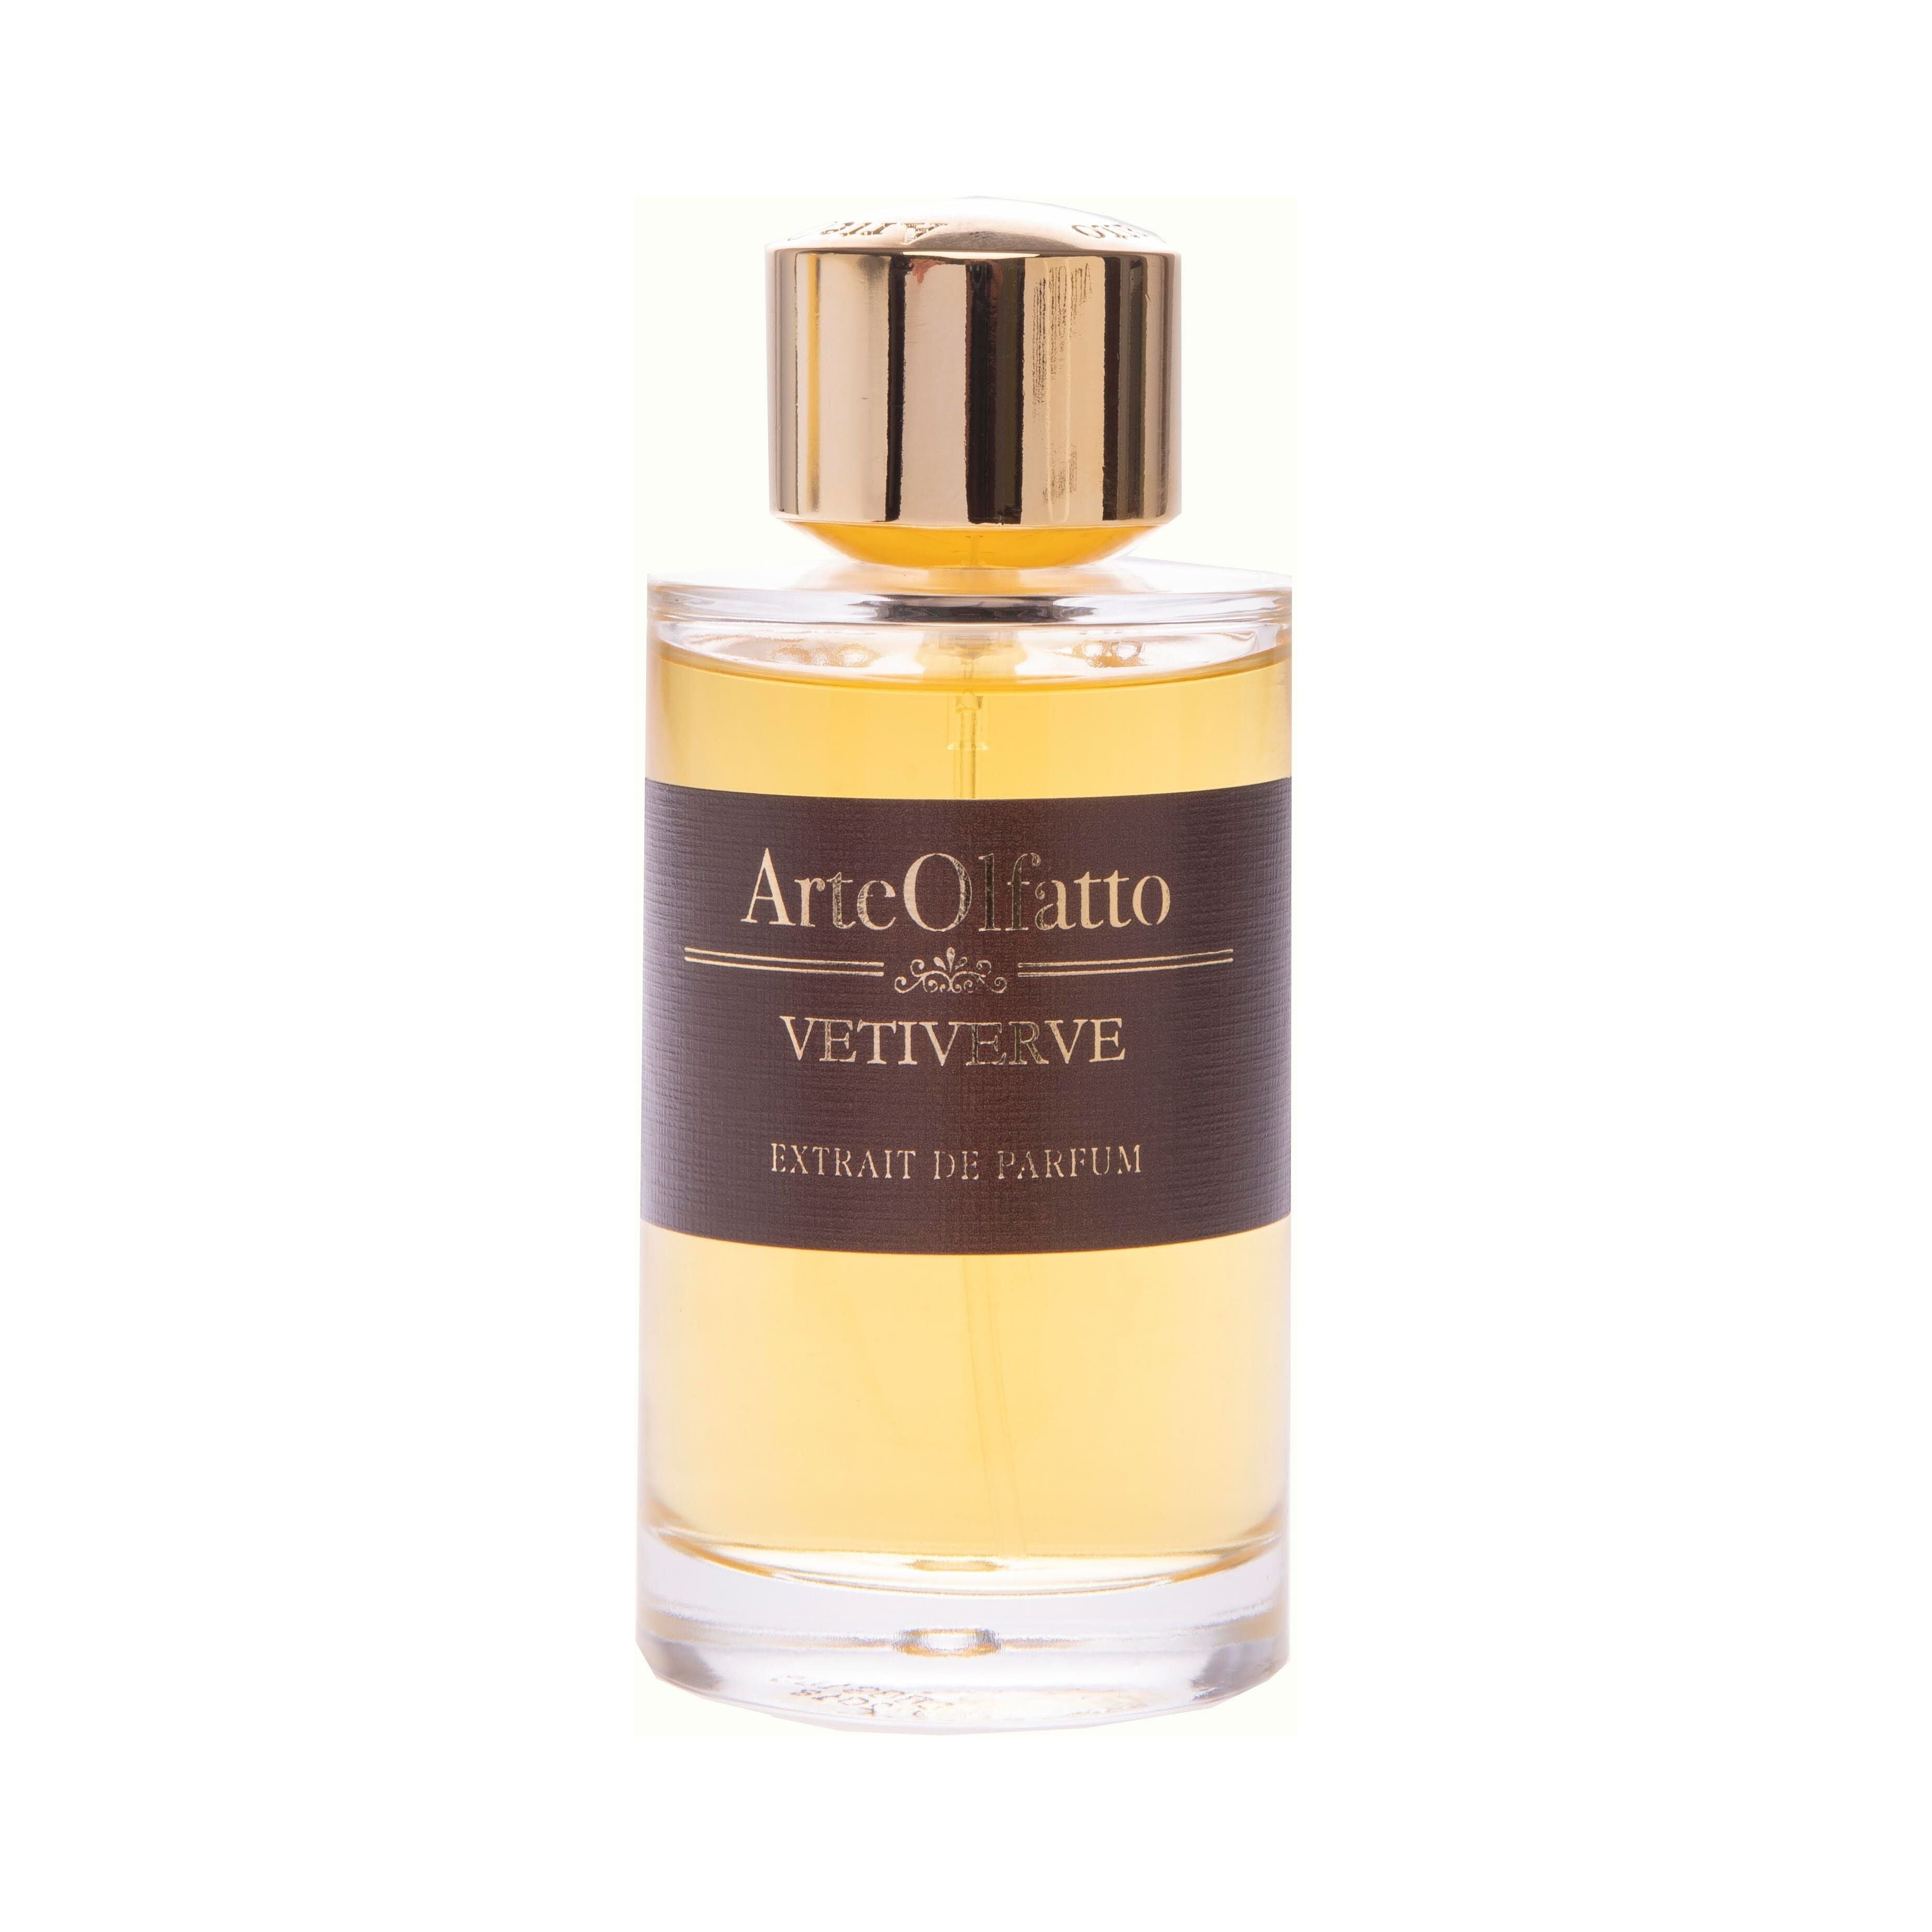 ArteOlfatto - Vetiverve - Extrait de Parfum